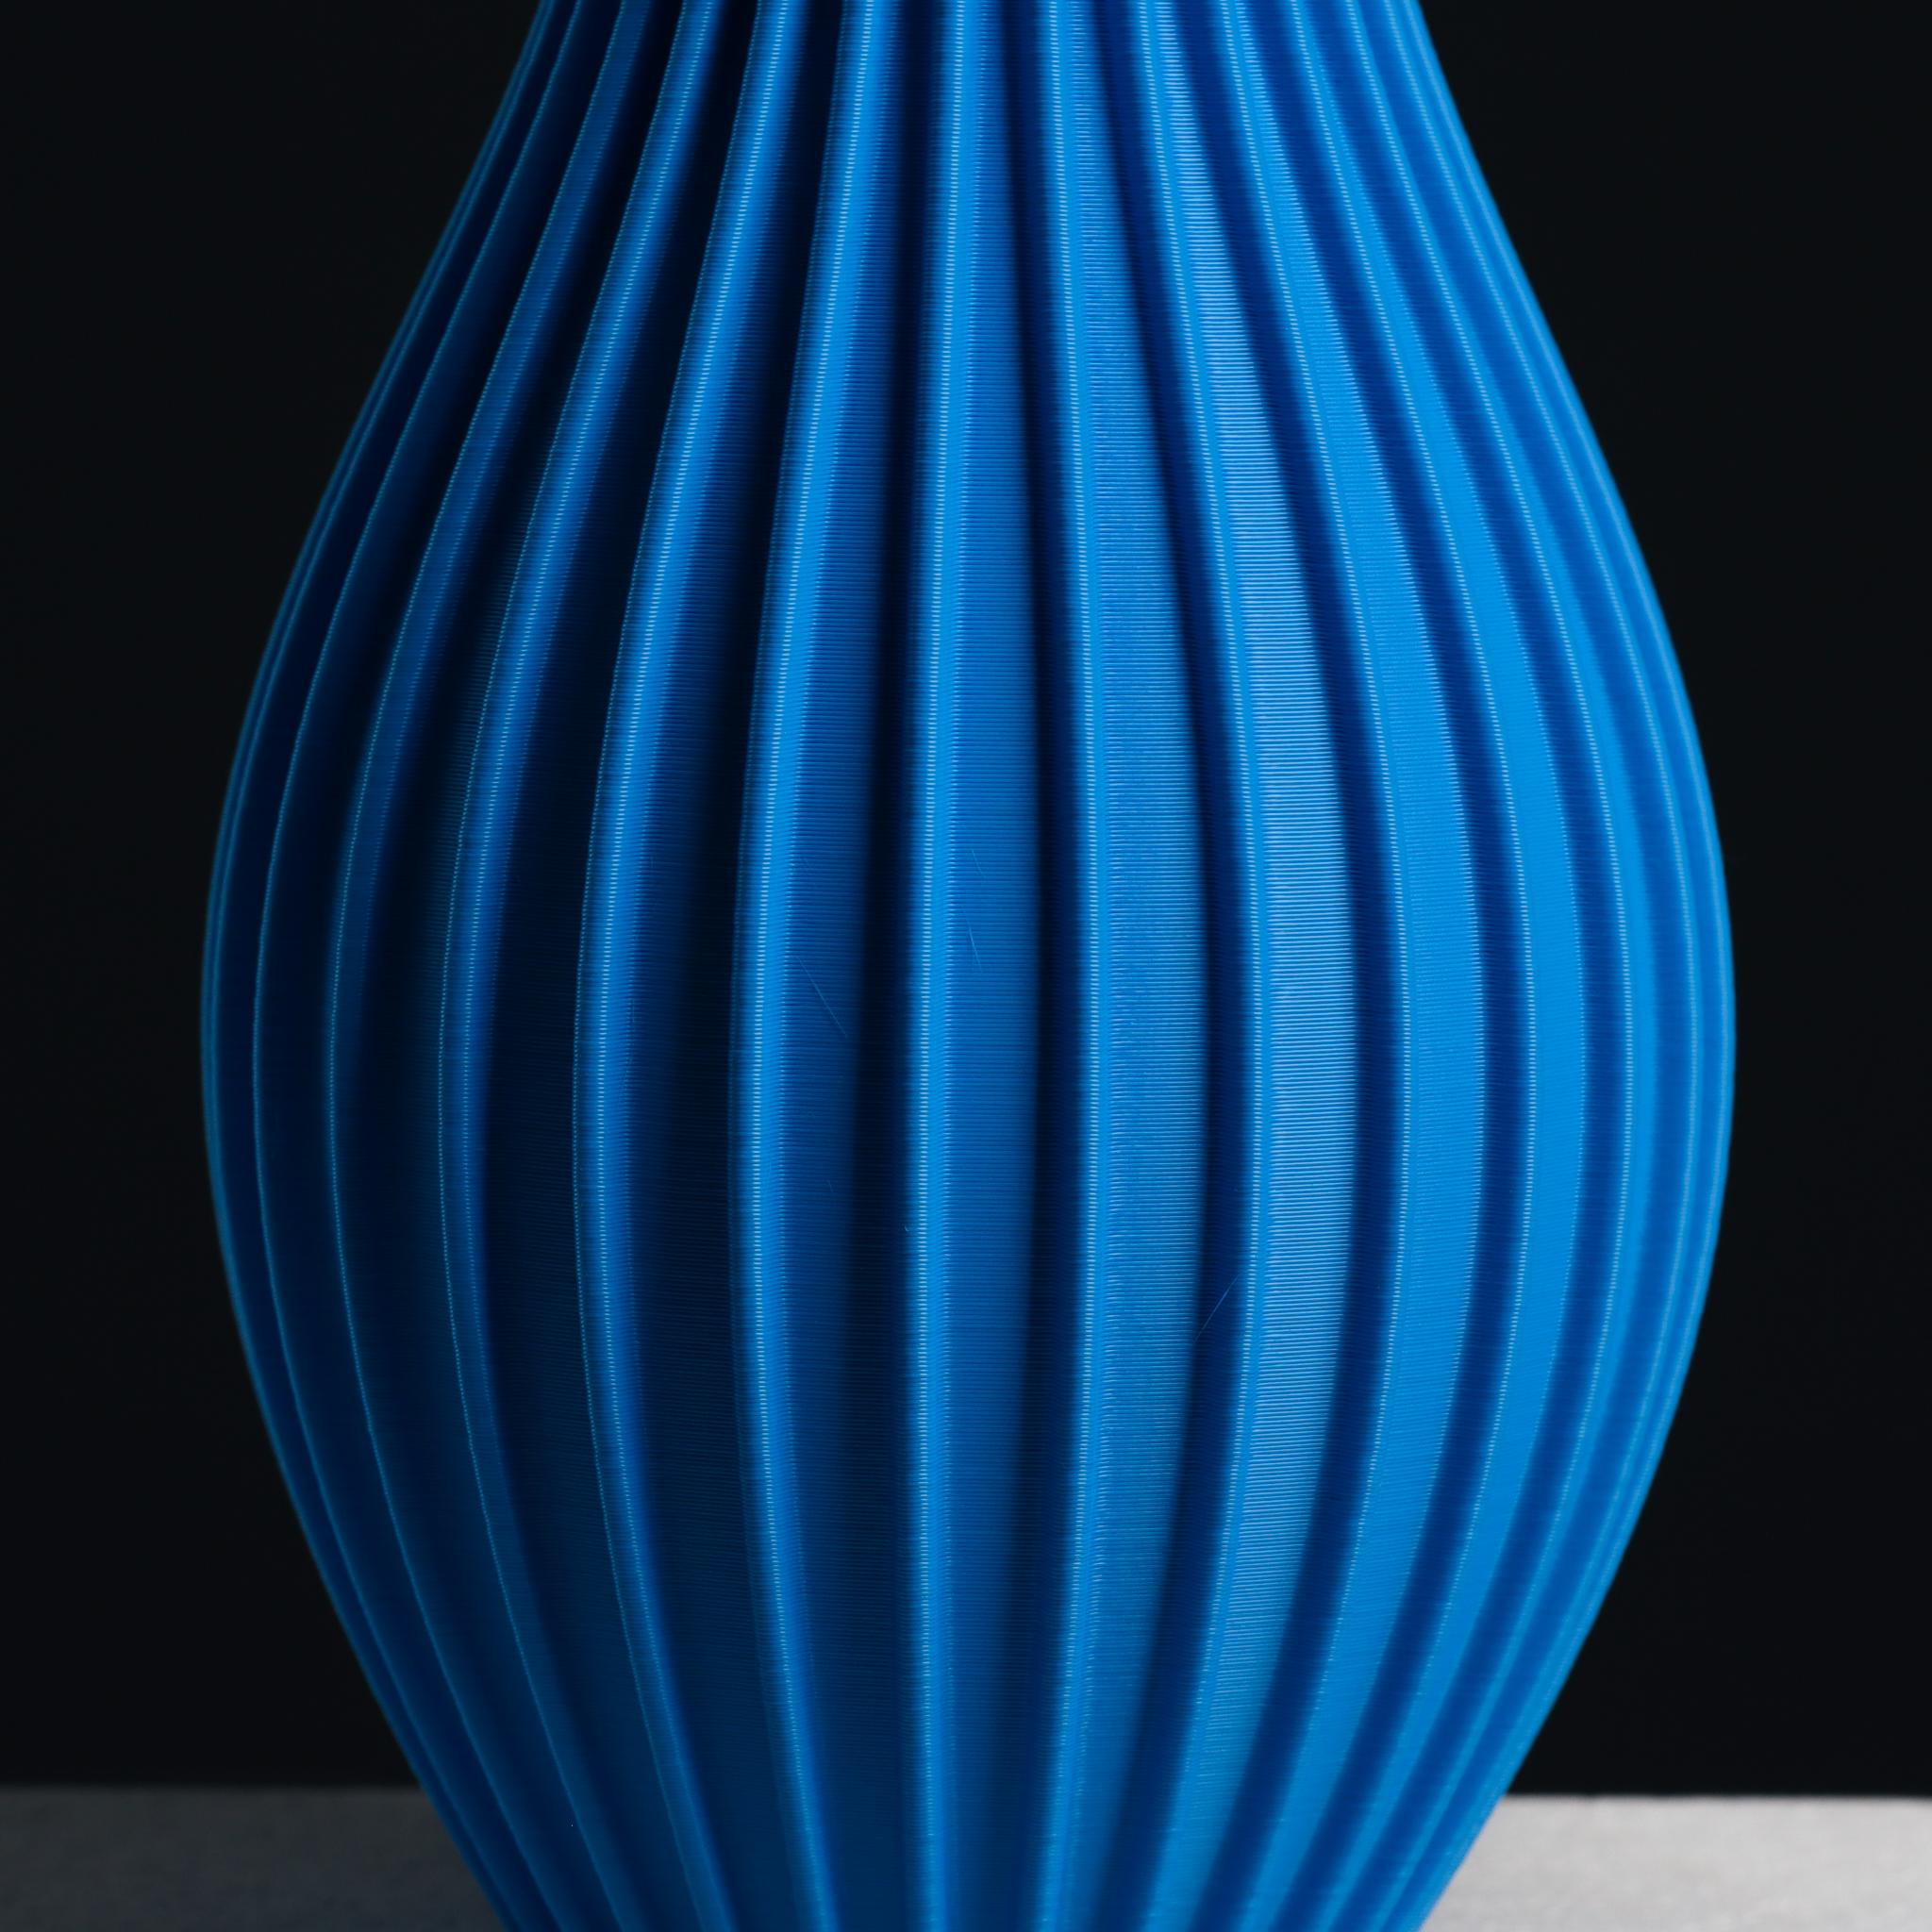 Nordic vase with Stripes | Vase Mode 3d model